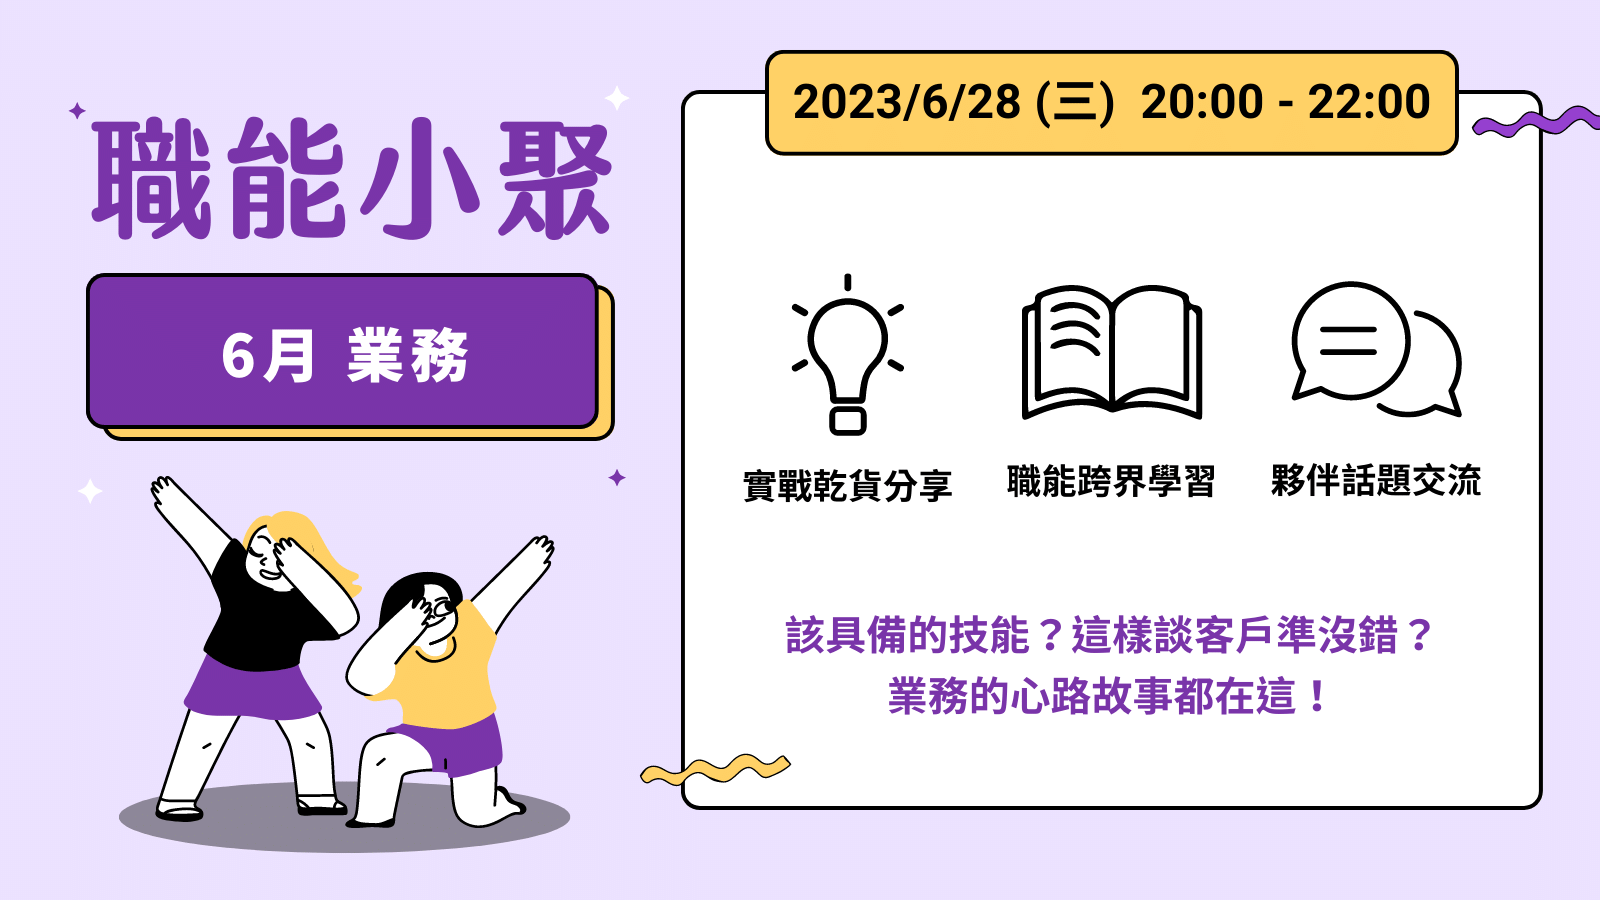 2023年 6 月職能小聚 - 6/28 業務課程封面